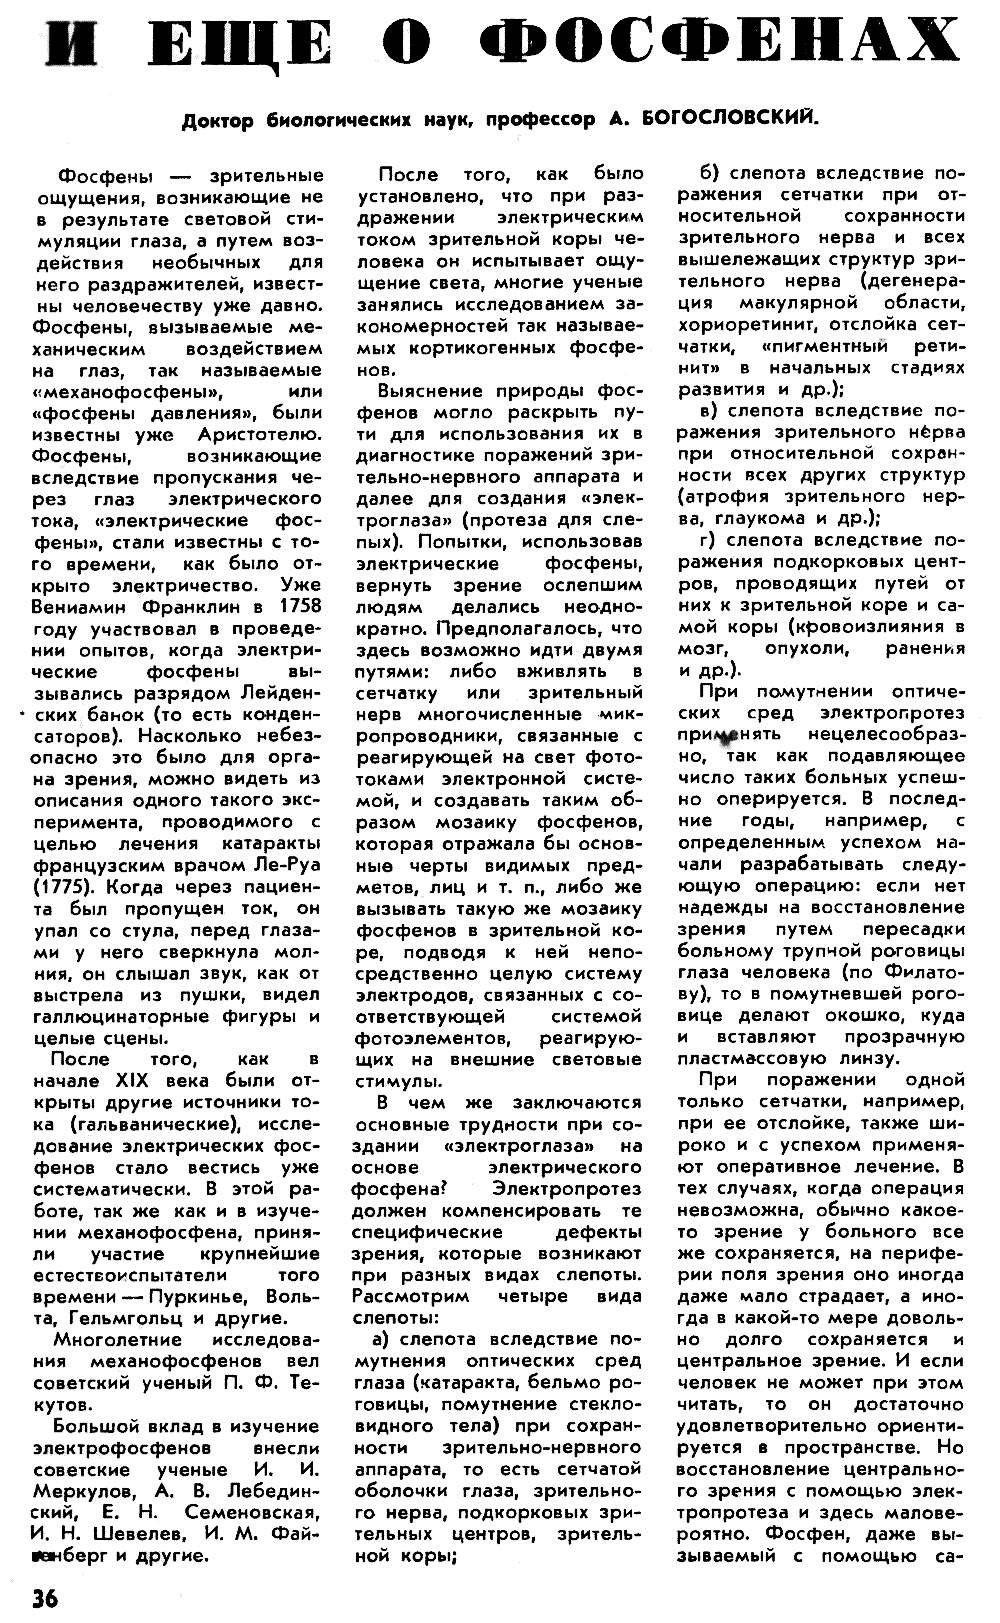 Фосфены. Г. Остер. Наука и жизнь, 1971, №4, с.33-37 (вкладка). Фотокопия №5